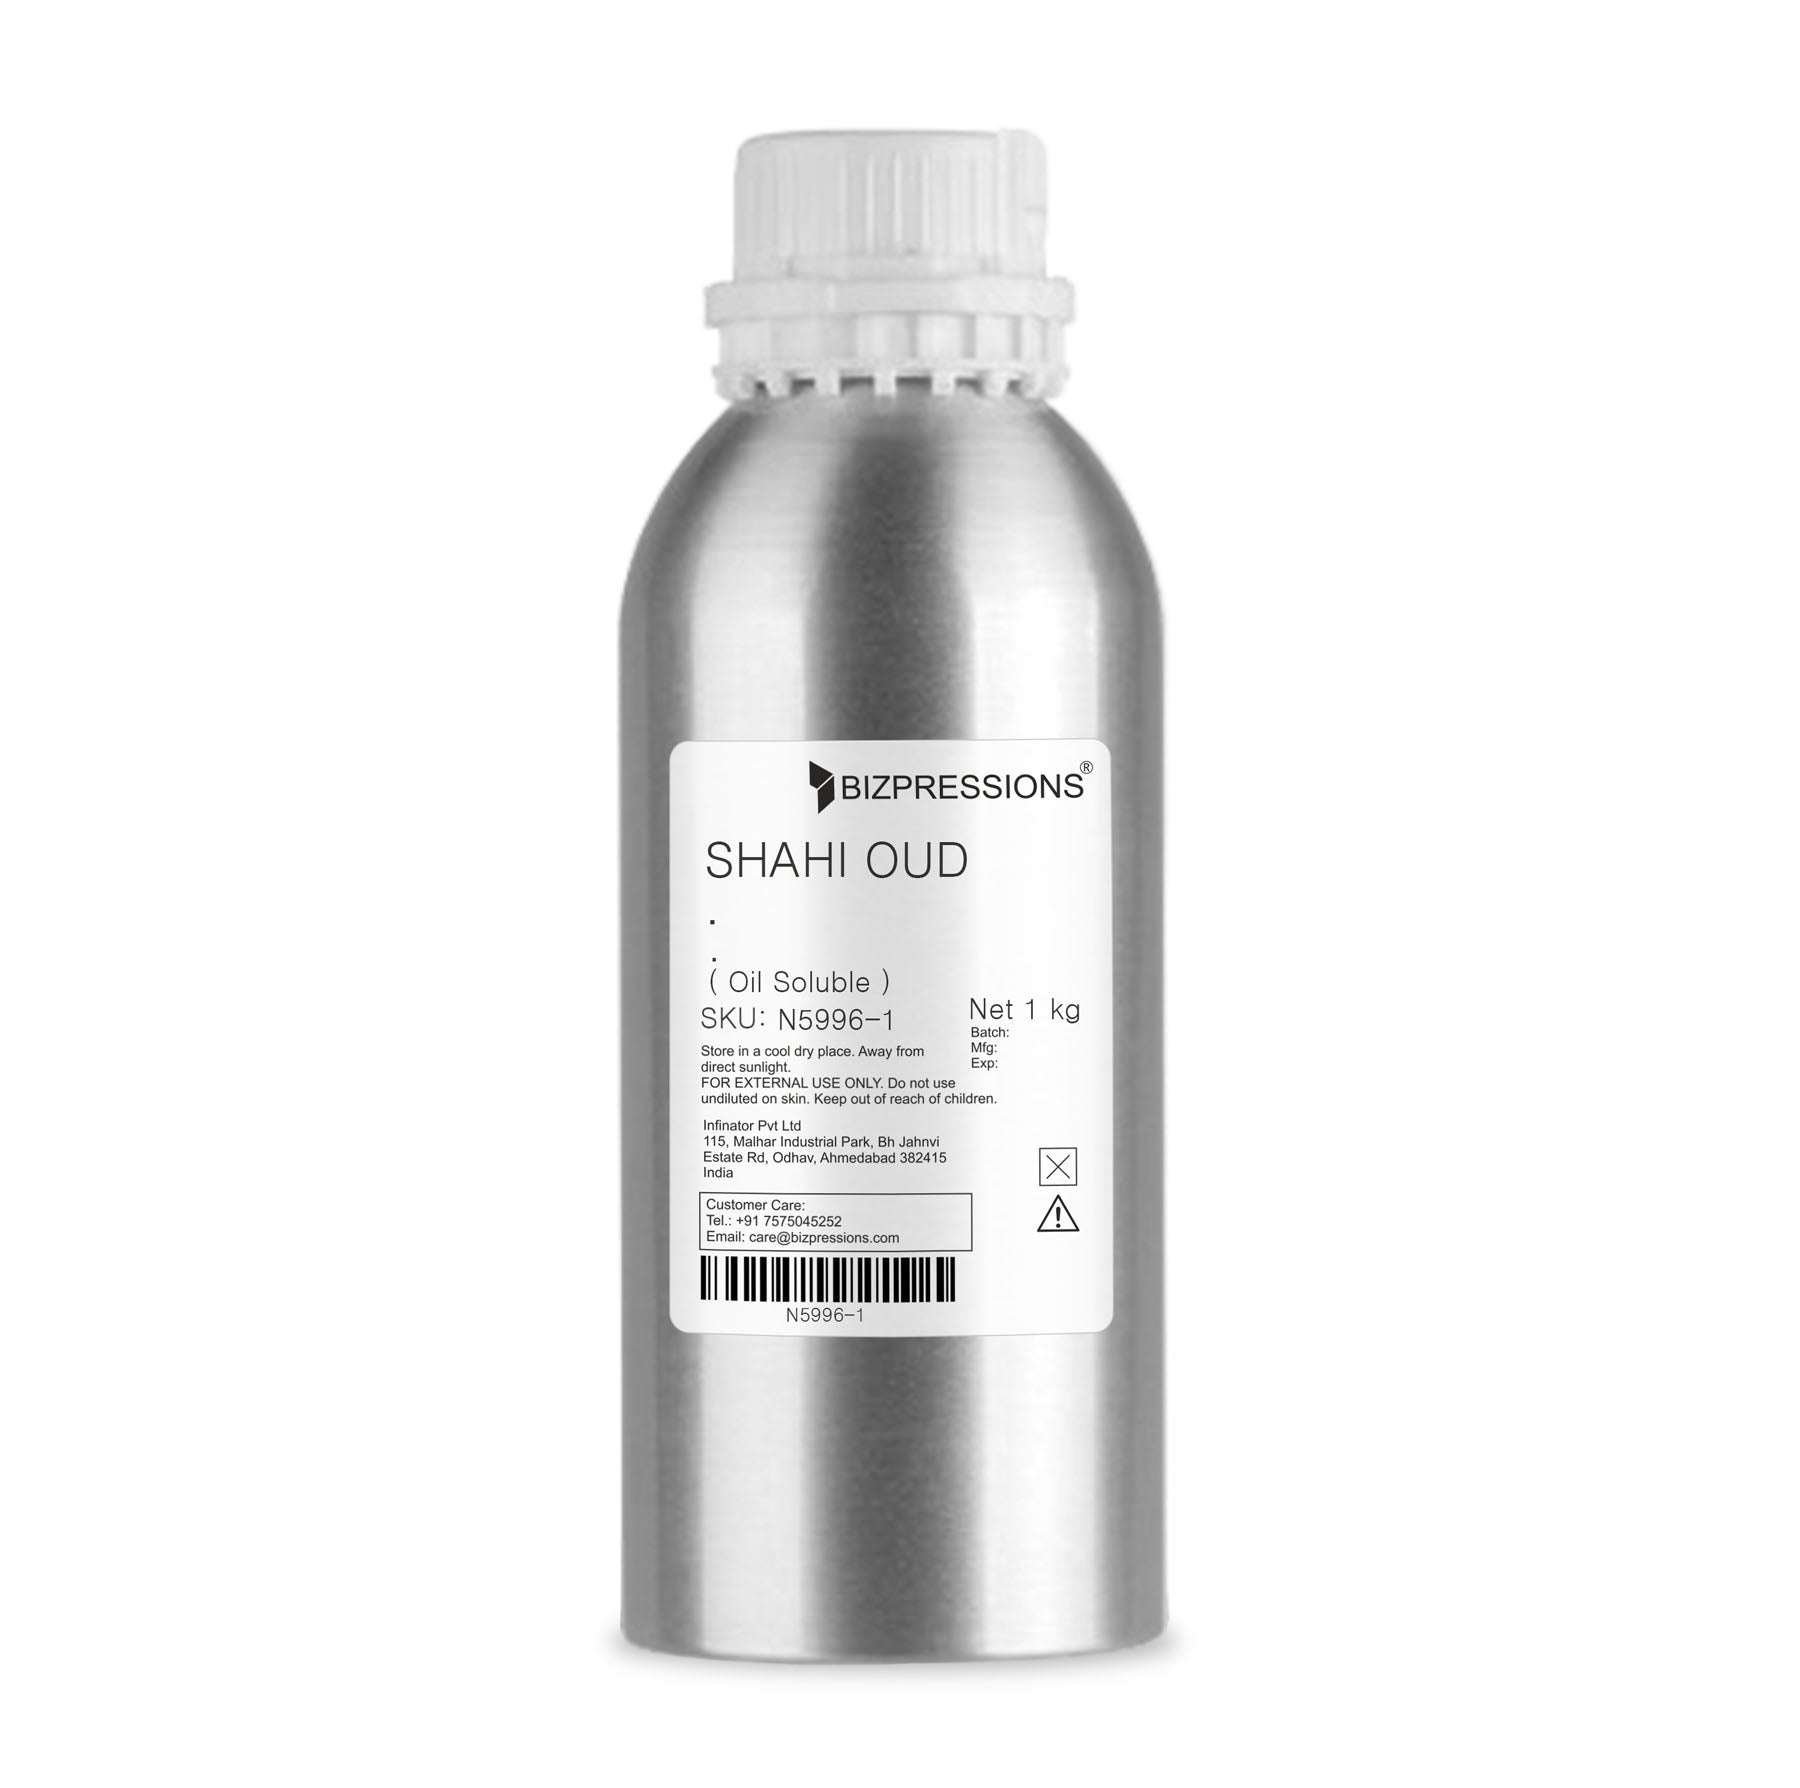 SHAHI OUD - Fragrance ( Oil Soluble ) - 1 kg